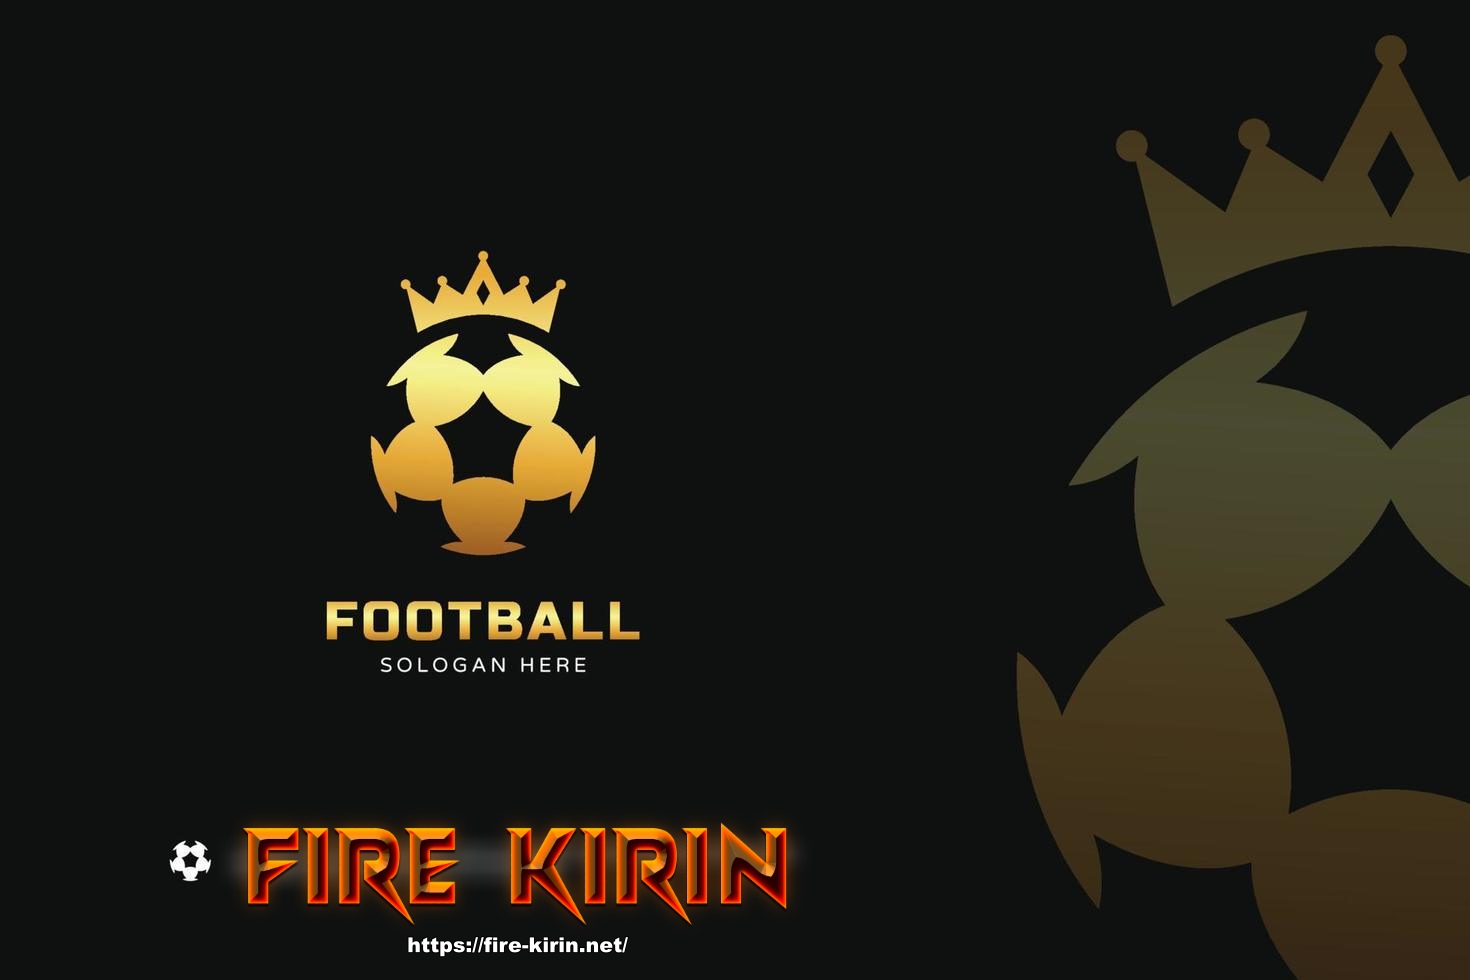 Fire Kirin Casino: Blaze a Trail to Riches